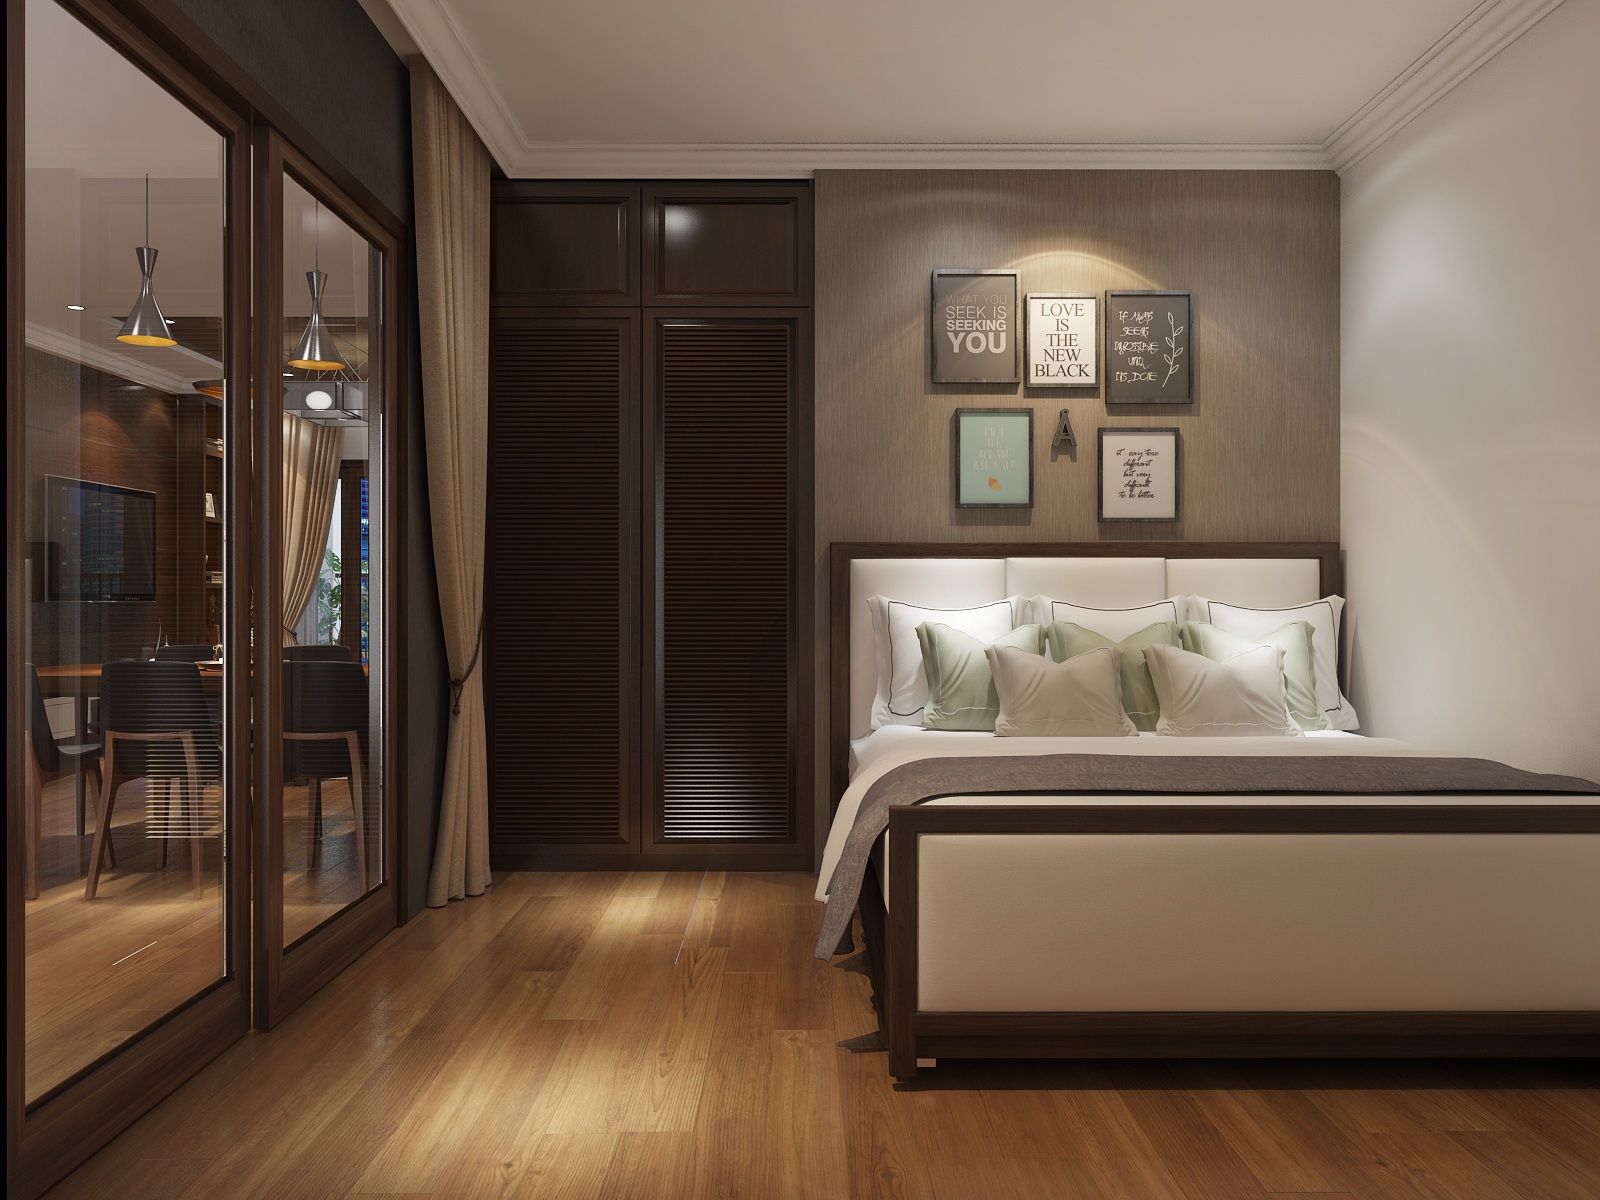 Thiết kế nội thất Chung Cư tại Hà Nội Thiết kế nội thất căn hộ chung cư Royal City - R108 1614415040 9